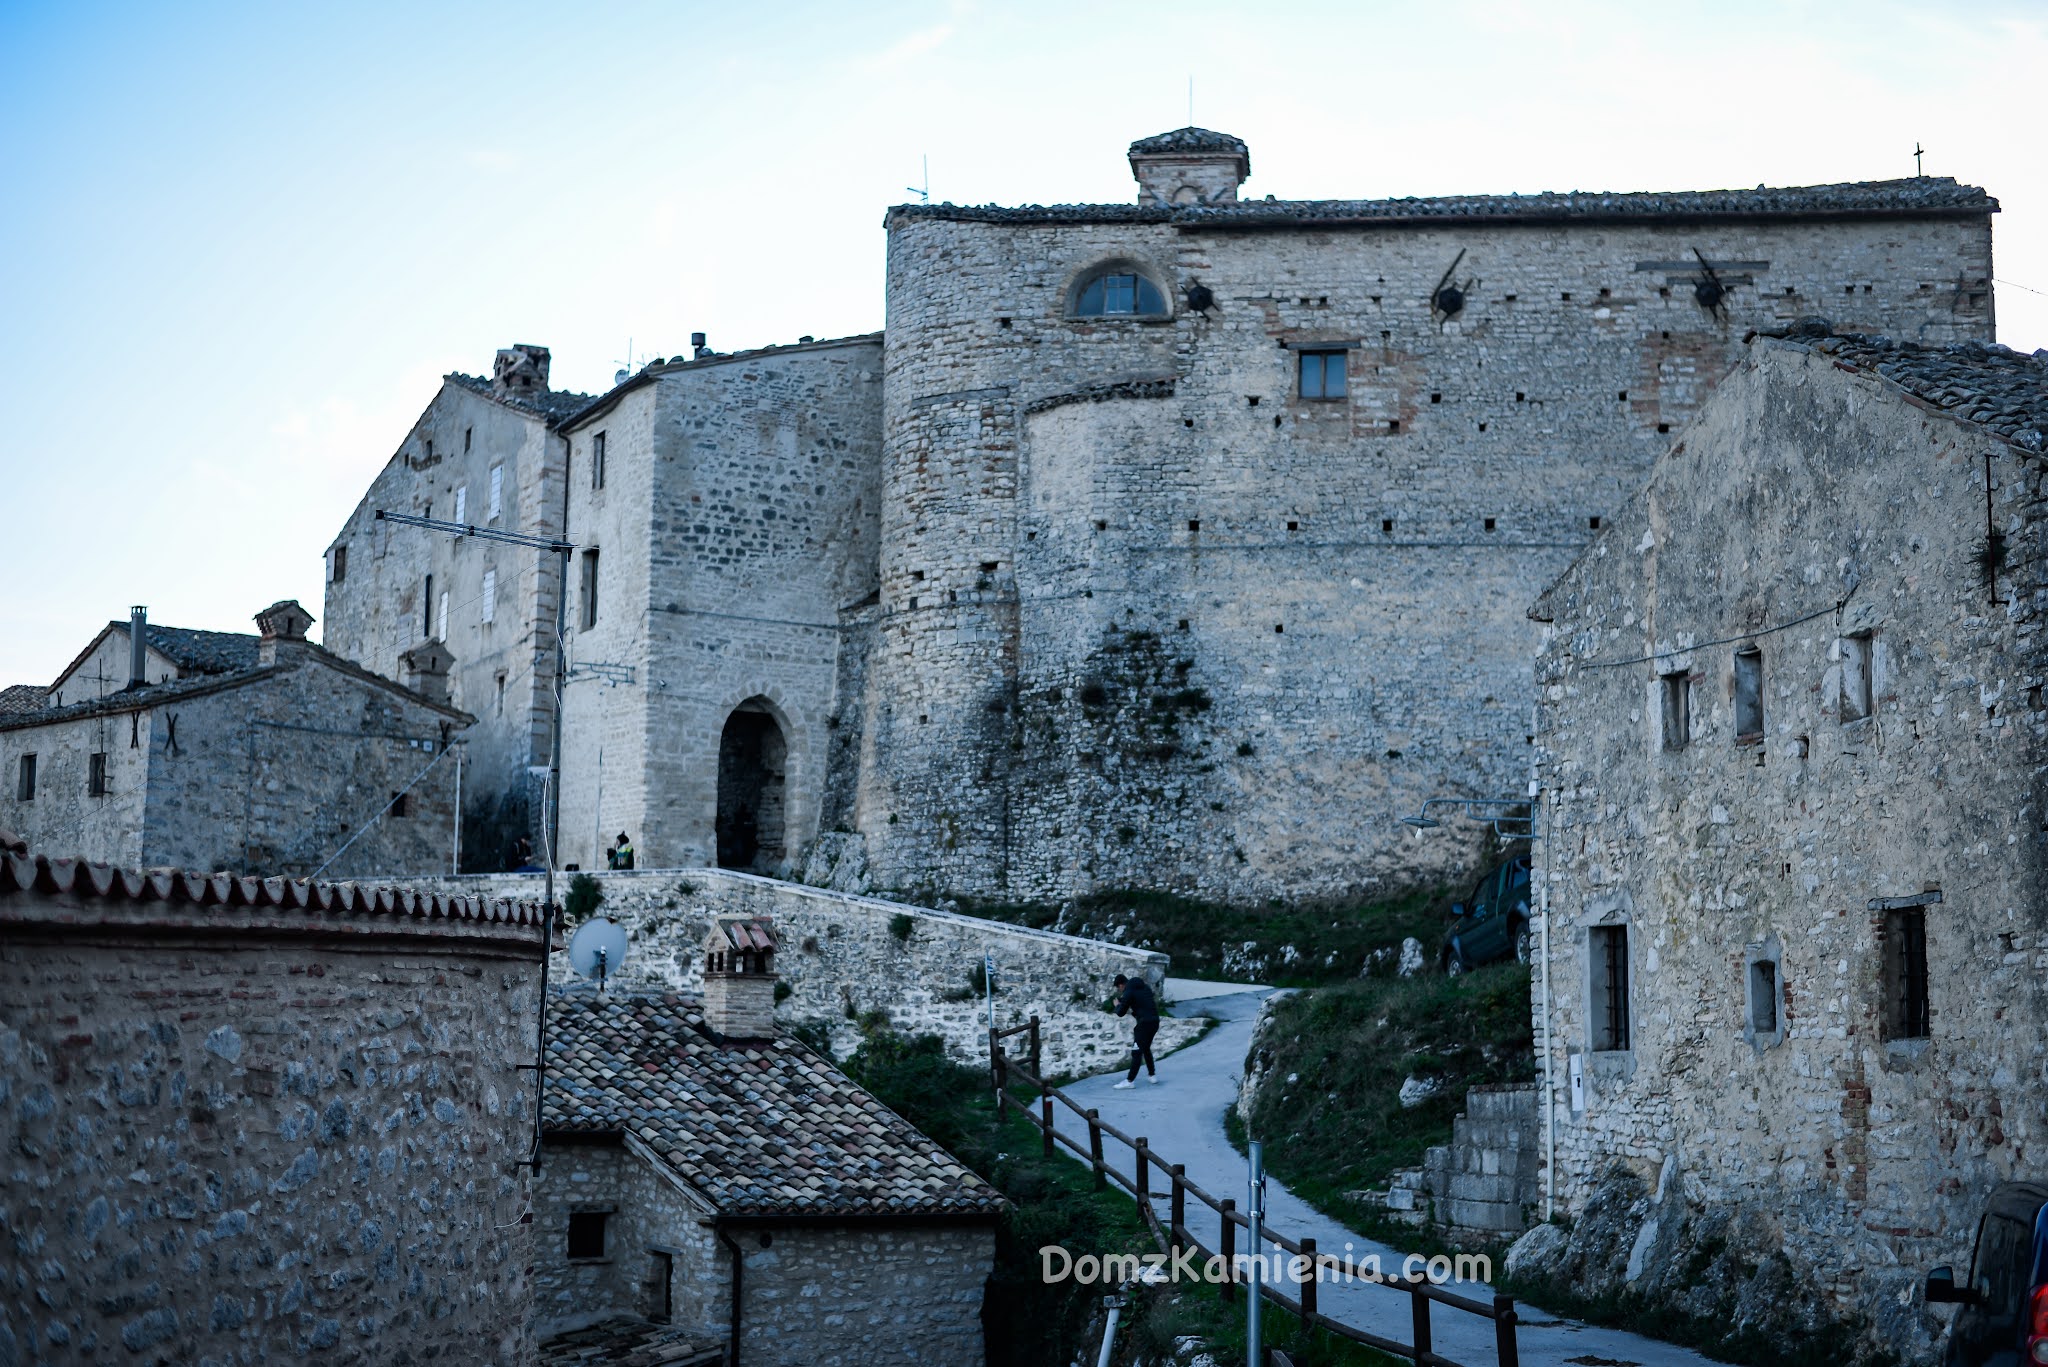 Elcito, Marche nieznany region Włoch, Dom z Kamienia blog